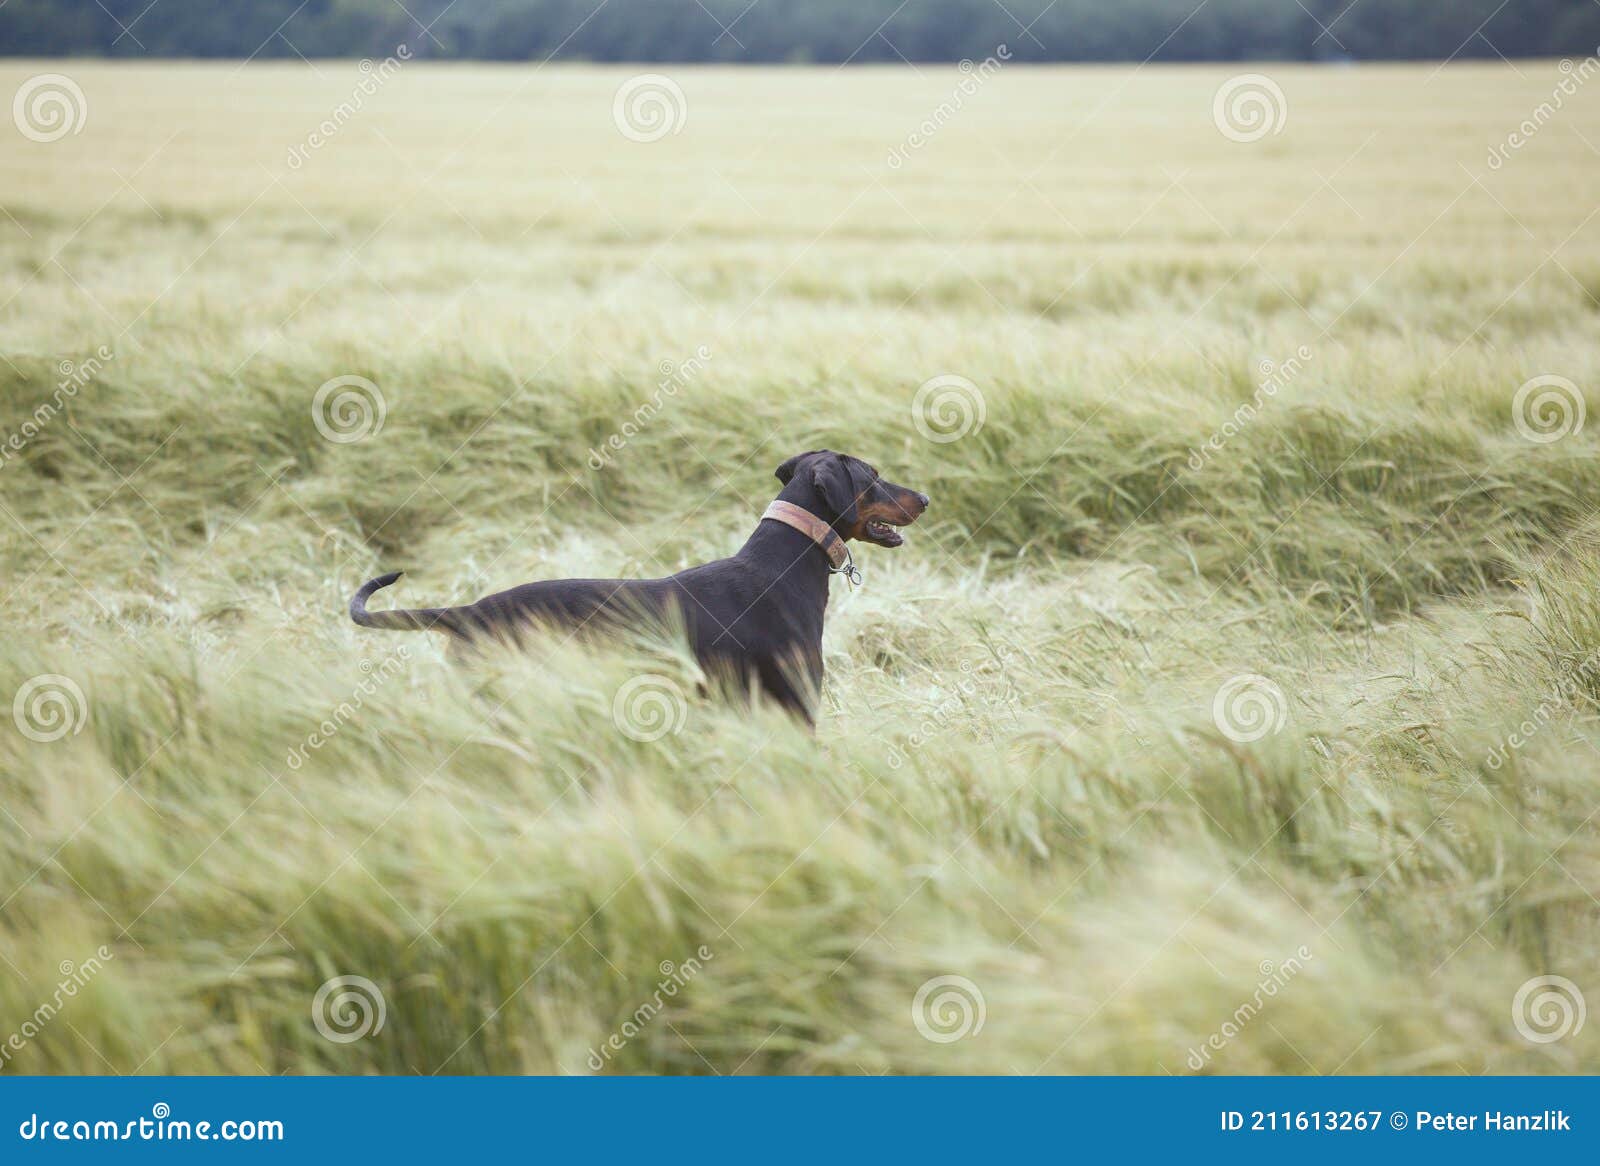 doberman watching in a wheat field